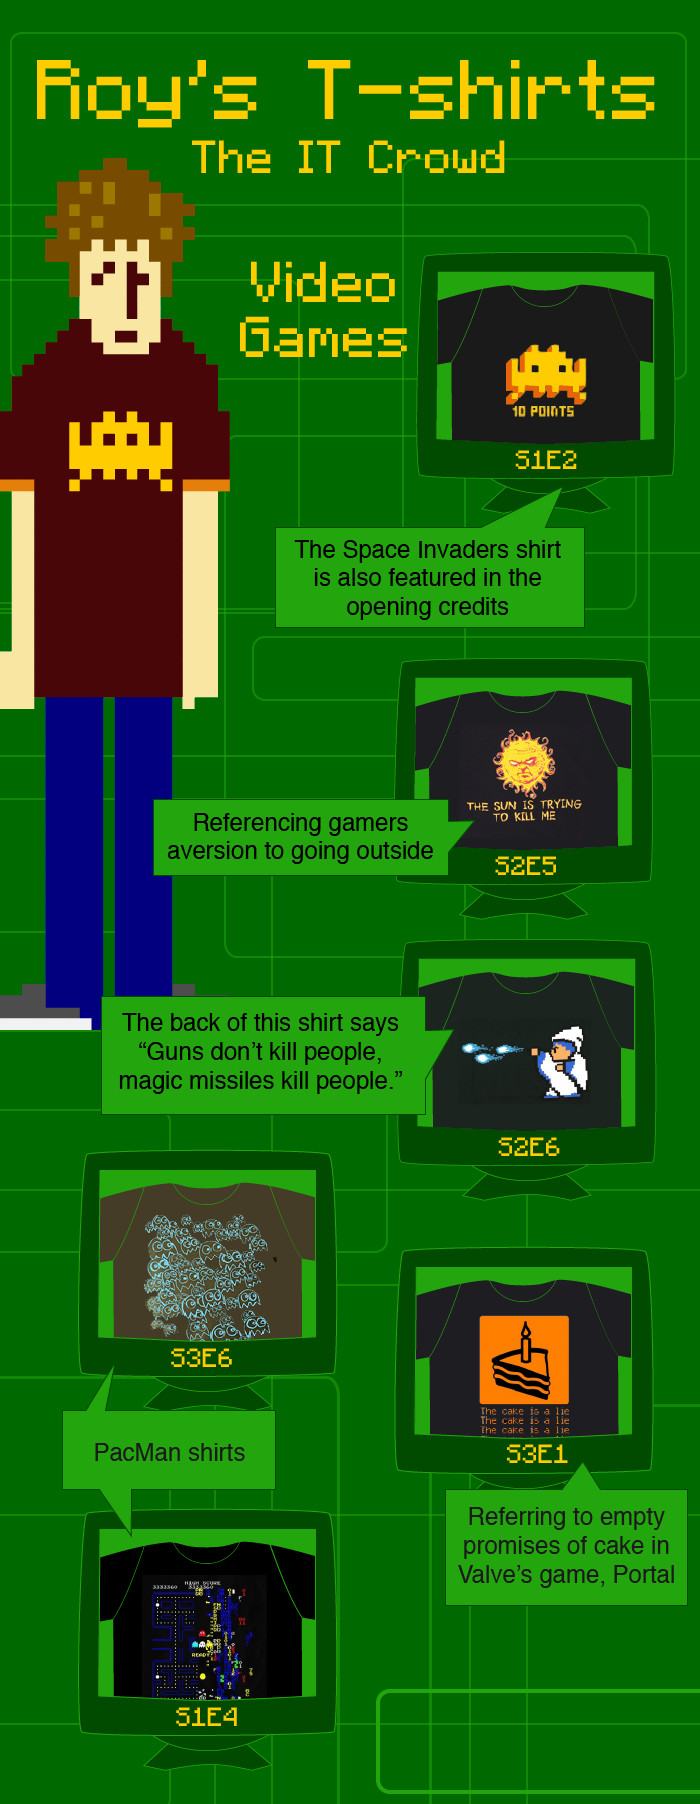 Obrázek roys tshirts video games